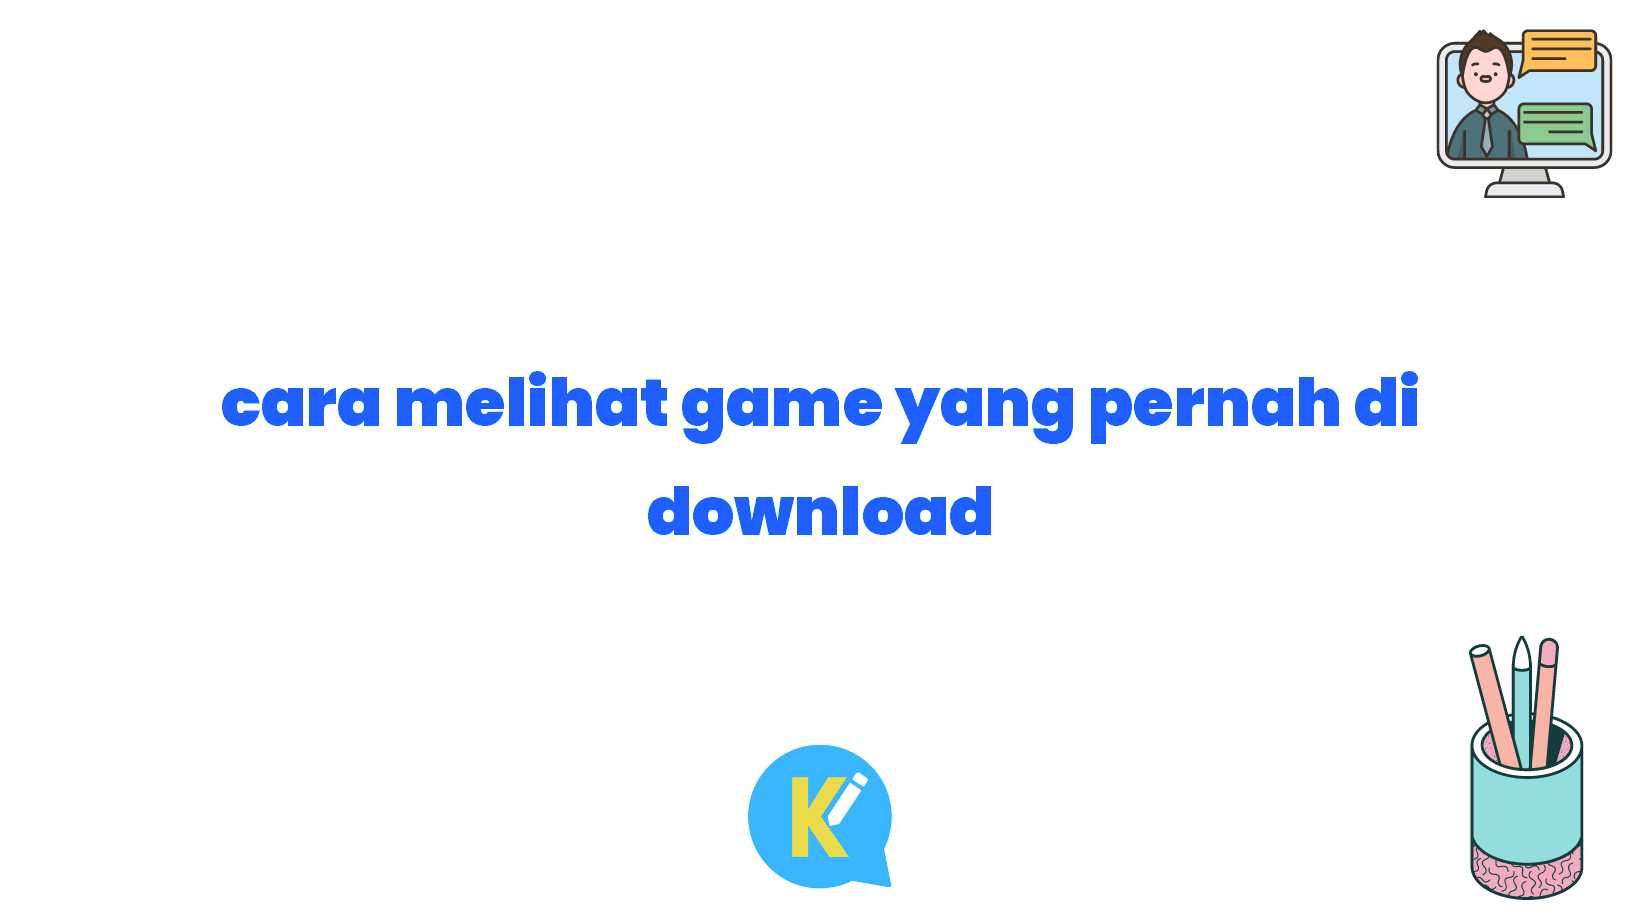 cara melihat game yang pernah di download